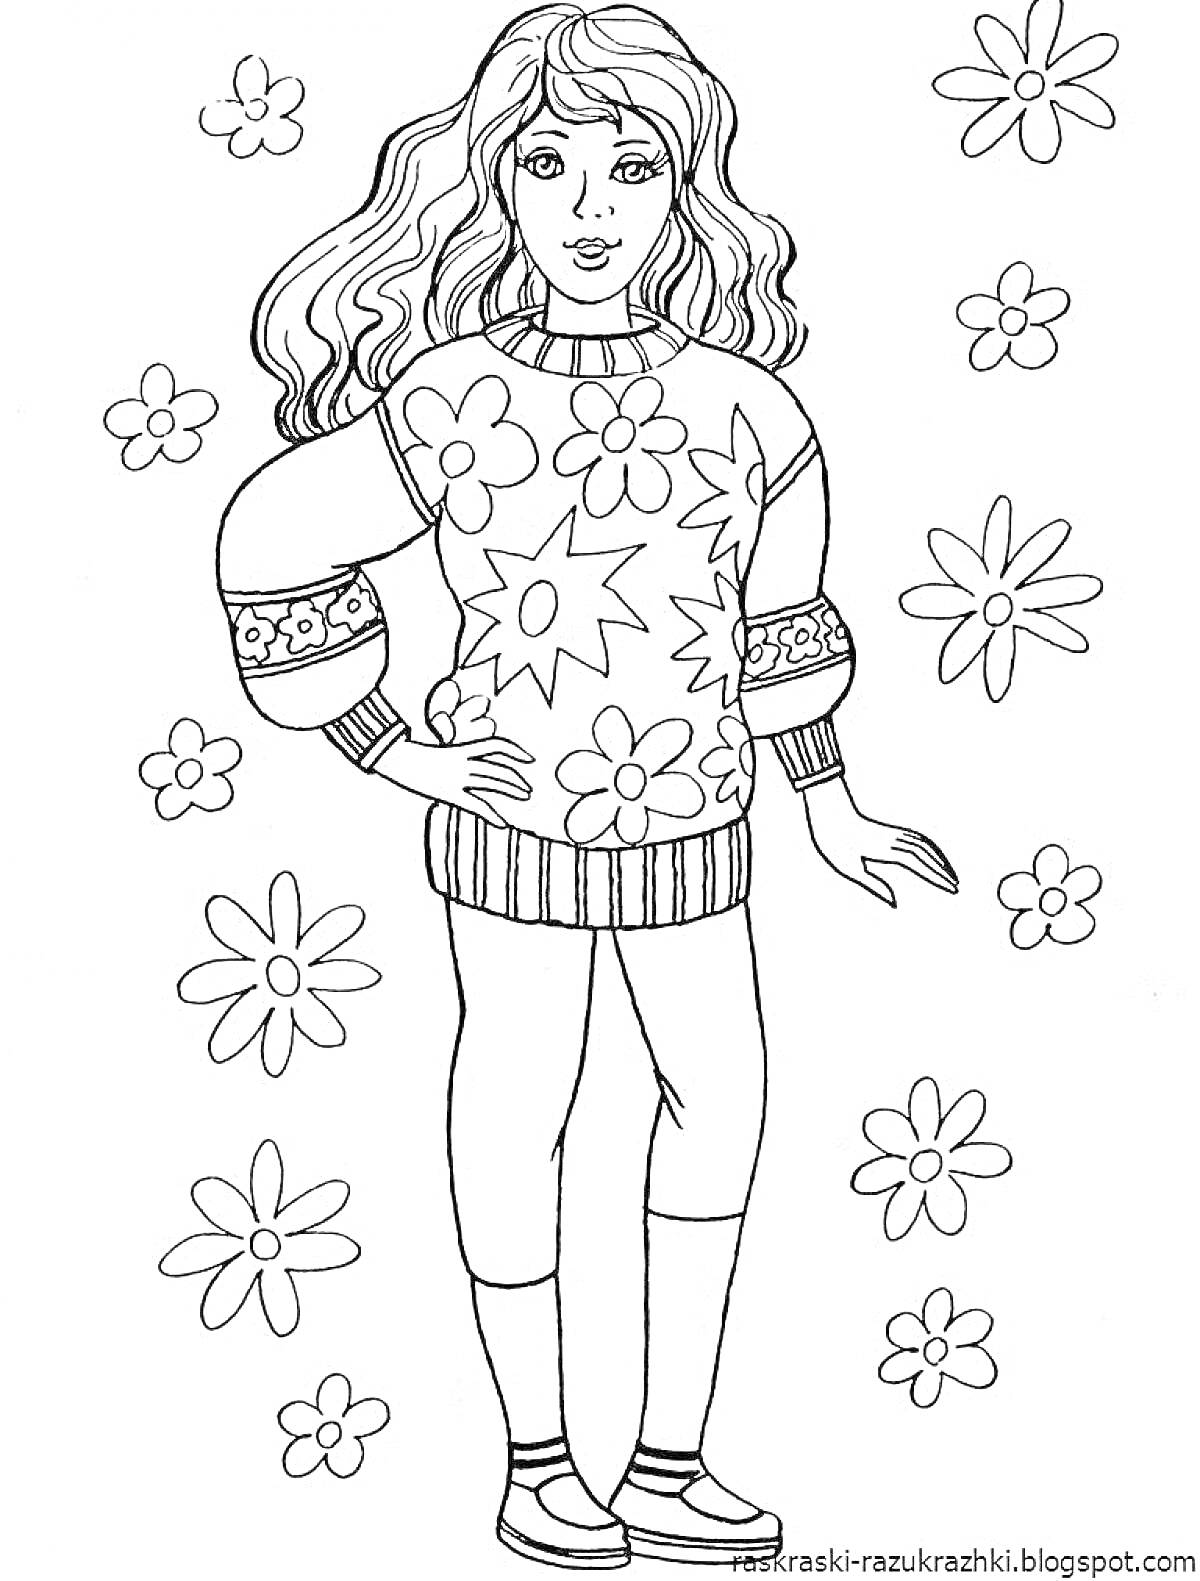 Раскраска Девочка в свитере с цветами среди цветков